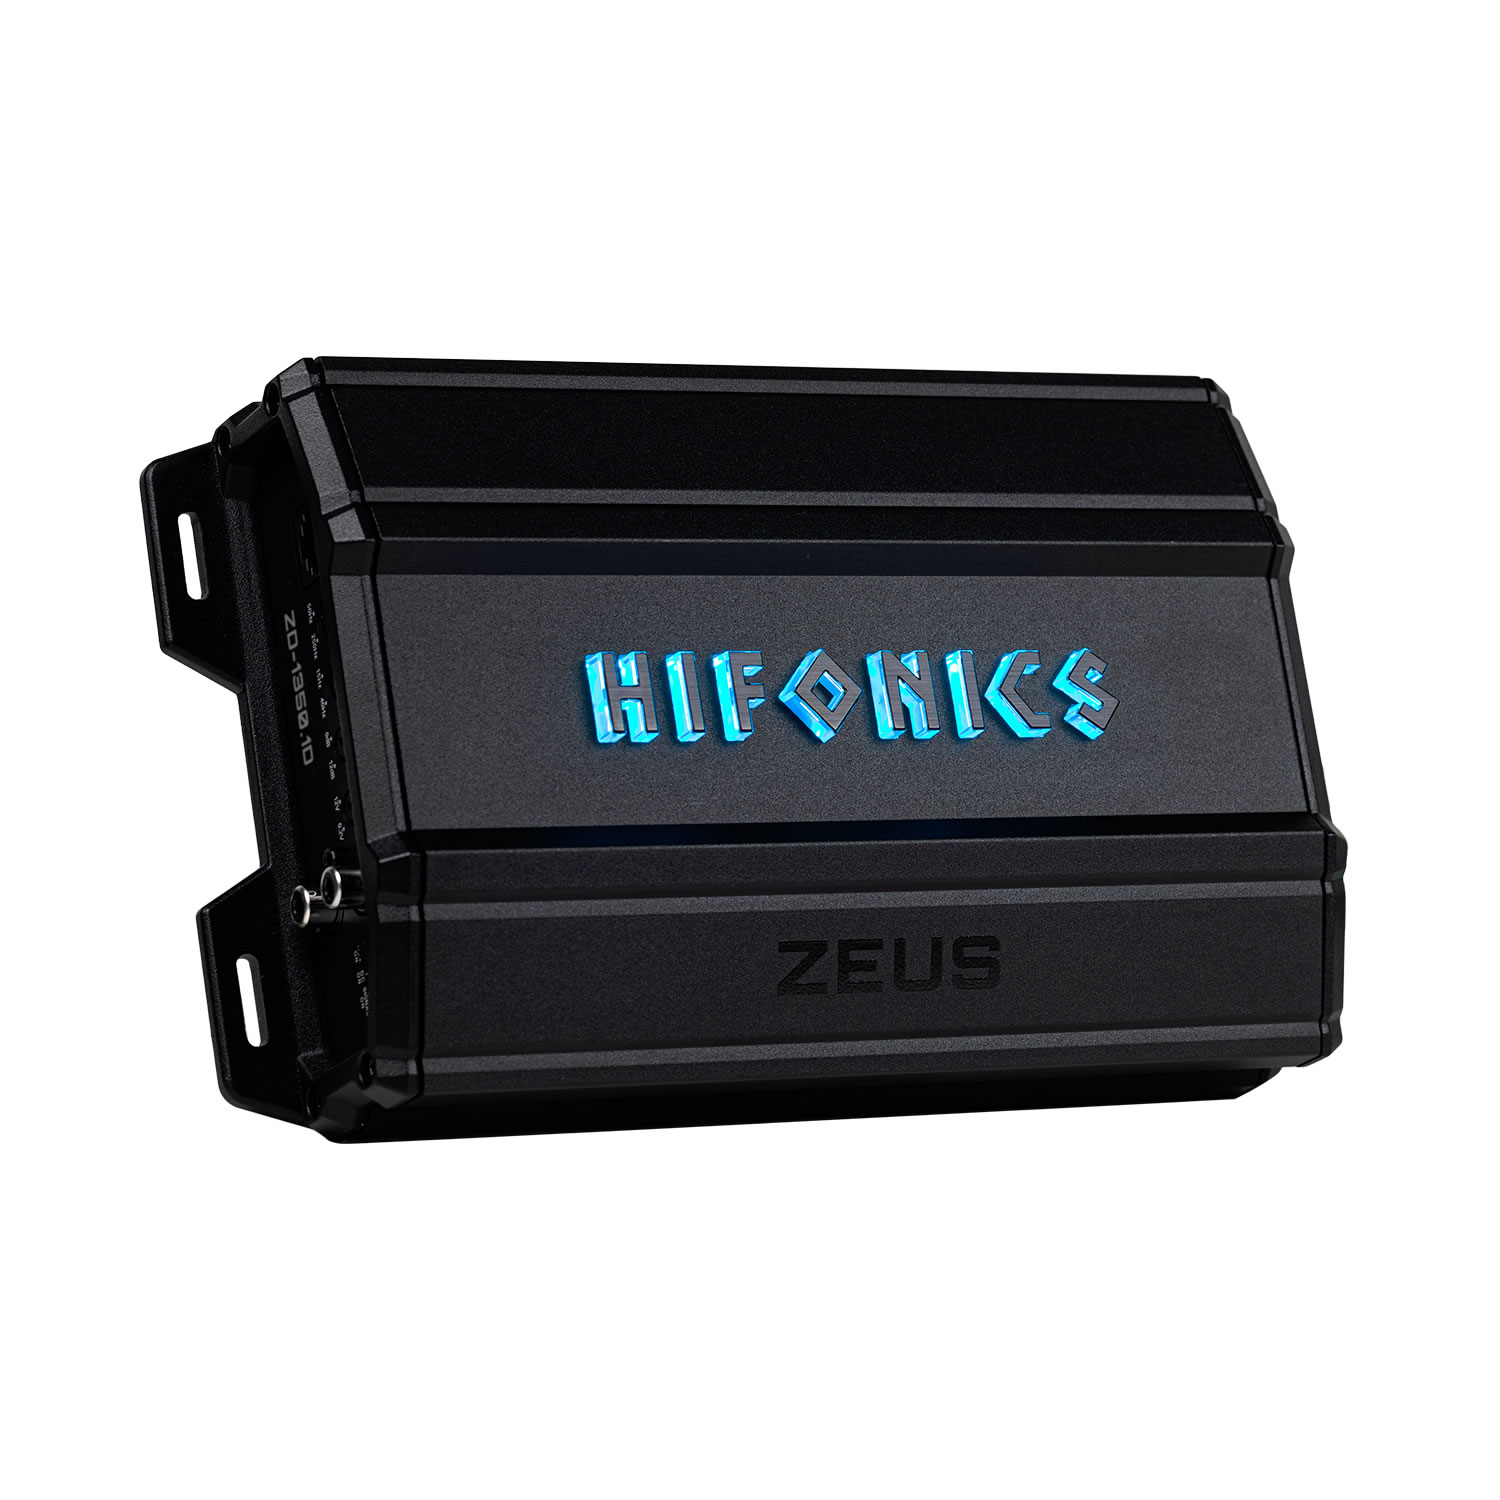 ZD-1350.1D ZEUS DELTA 1350 Watt Mono Block Amplifier